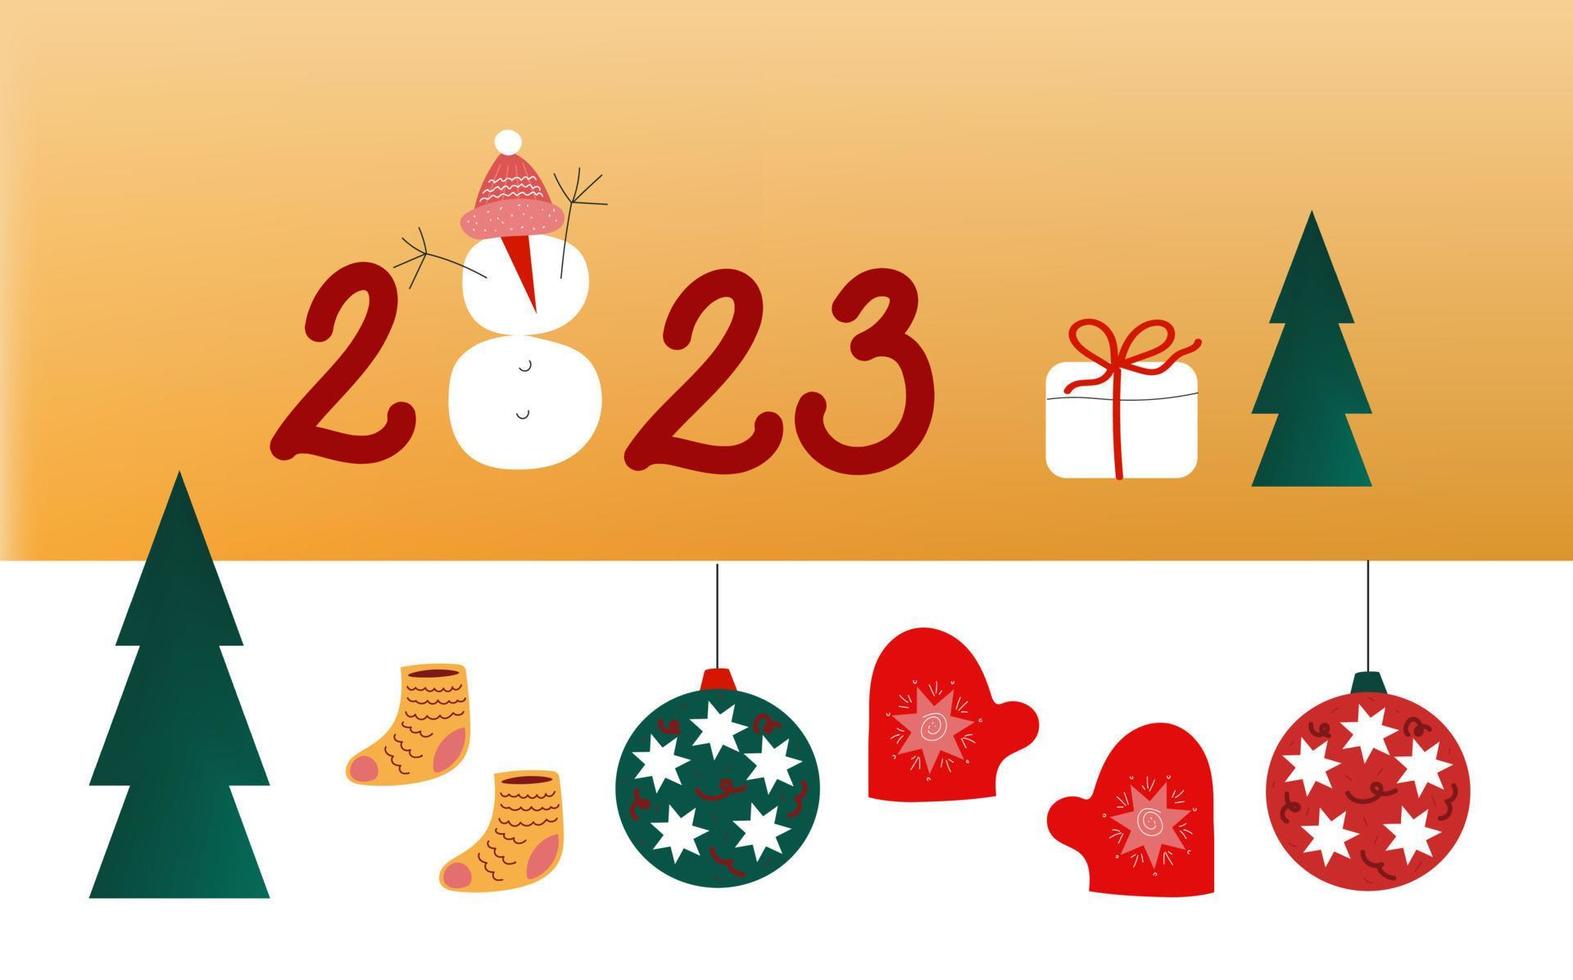 nieuw jaar winter Kerstmis partij set.vector illustratie in hand- getrokken stijl voor winter vakantie kaarten ontwerp. vector